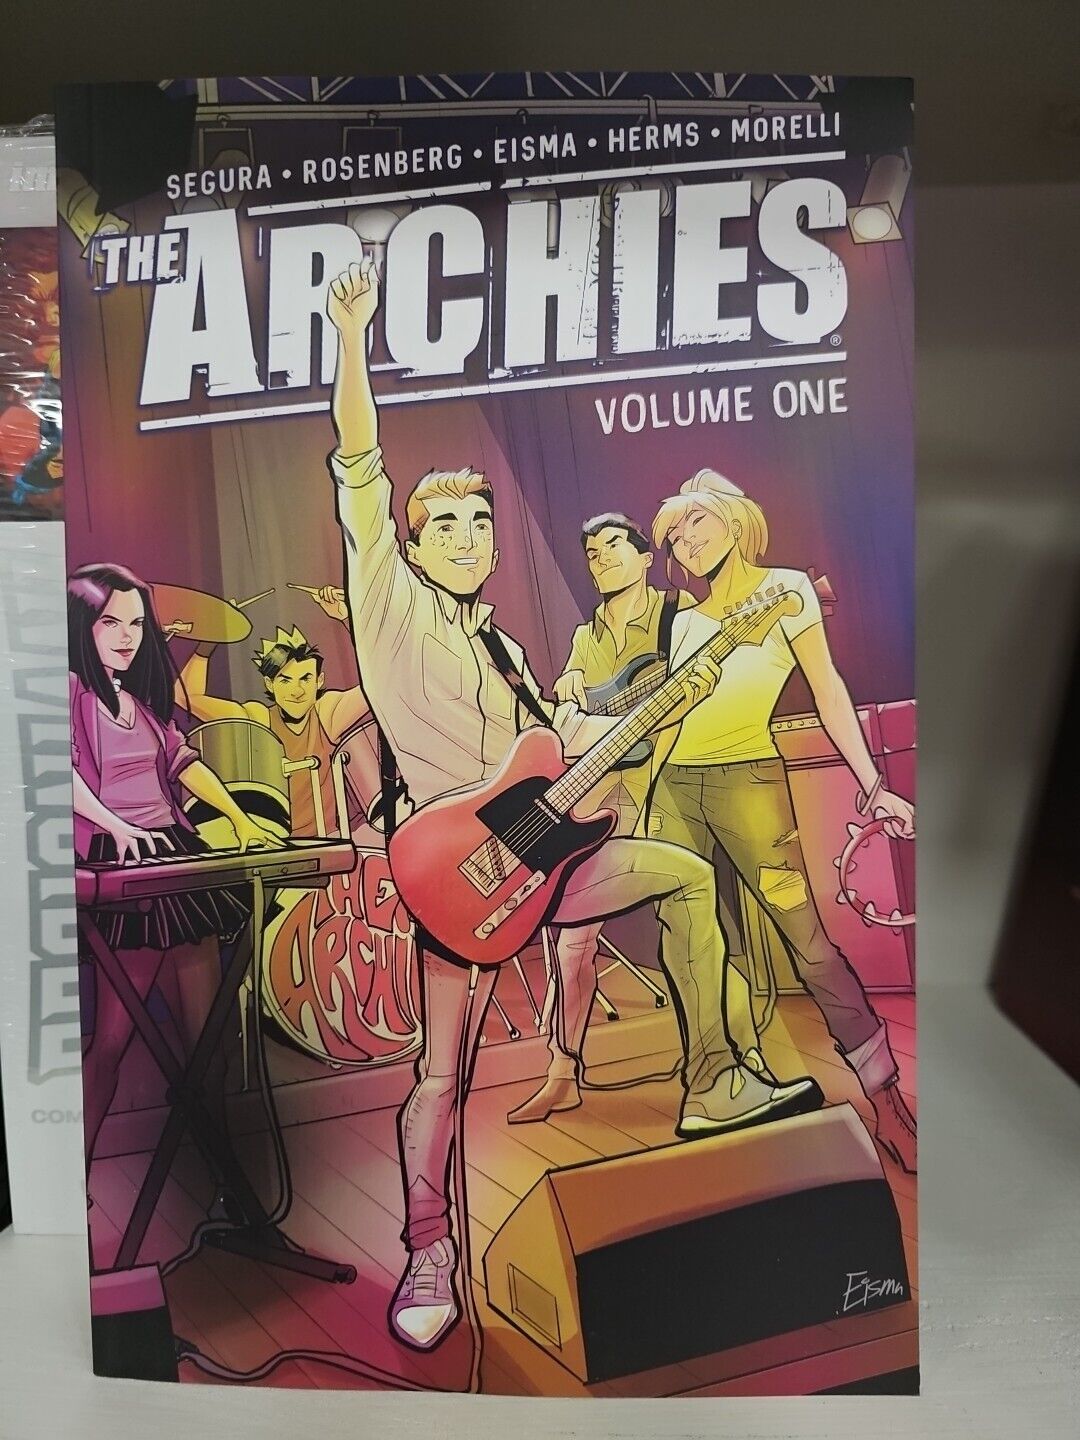 The Archies #1 (ARCHIE COMICS Publications, Inc. June 2018)